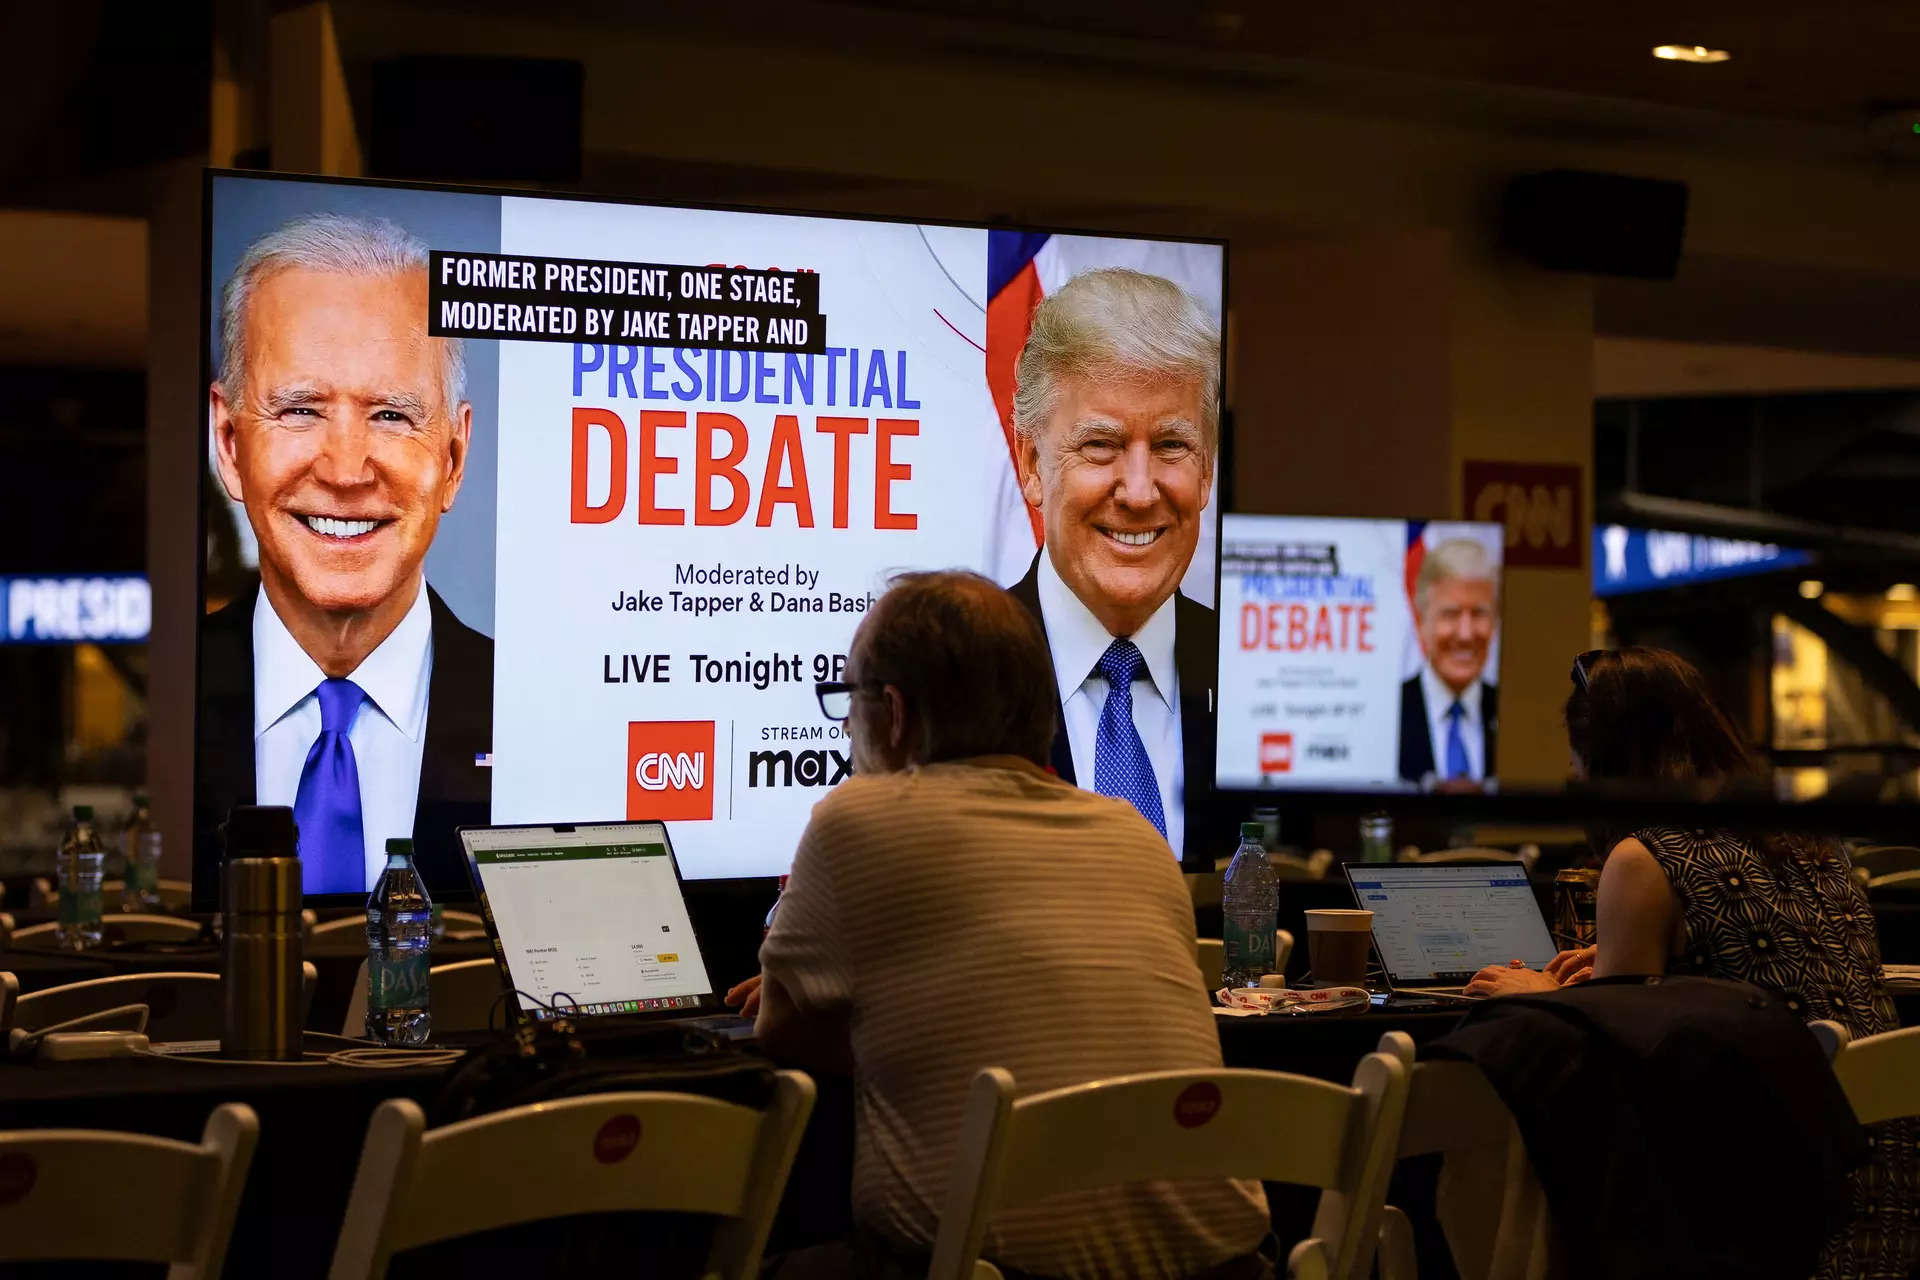 Biden delivers uneven performance under Trump's barrage of falsehoods at first debate 